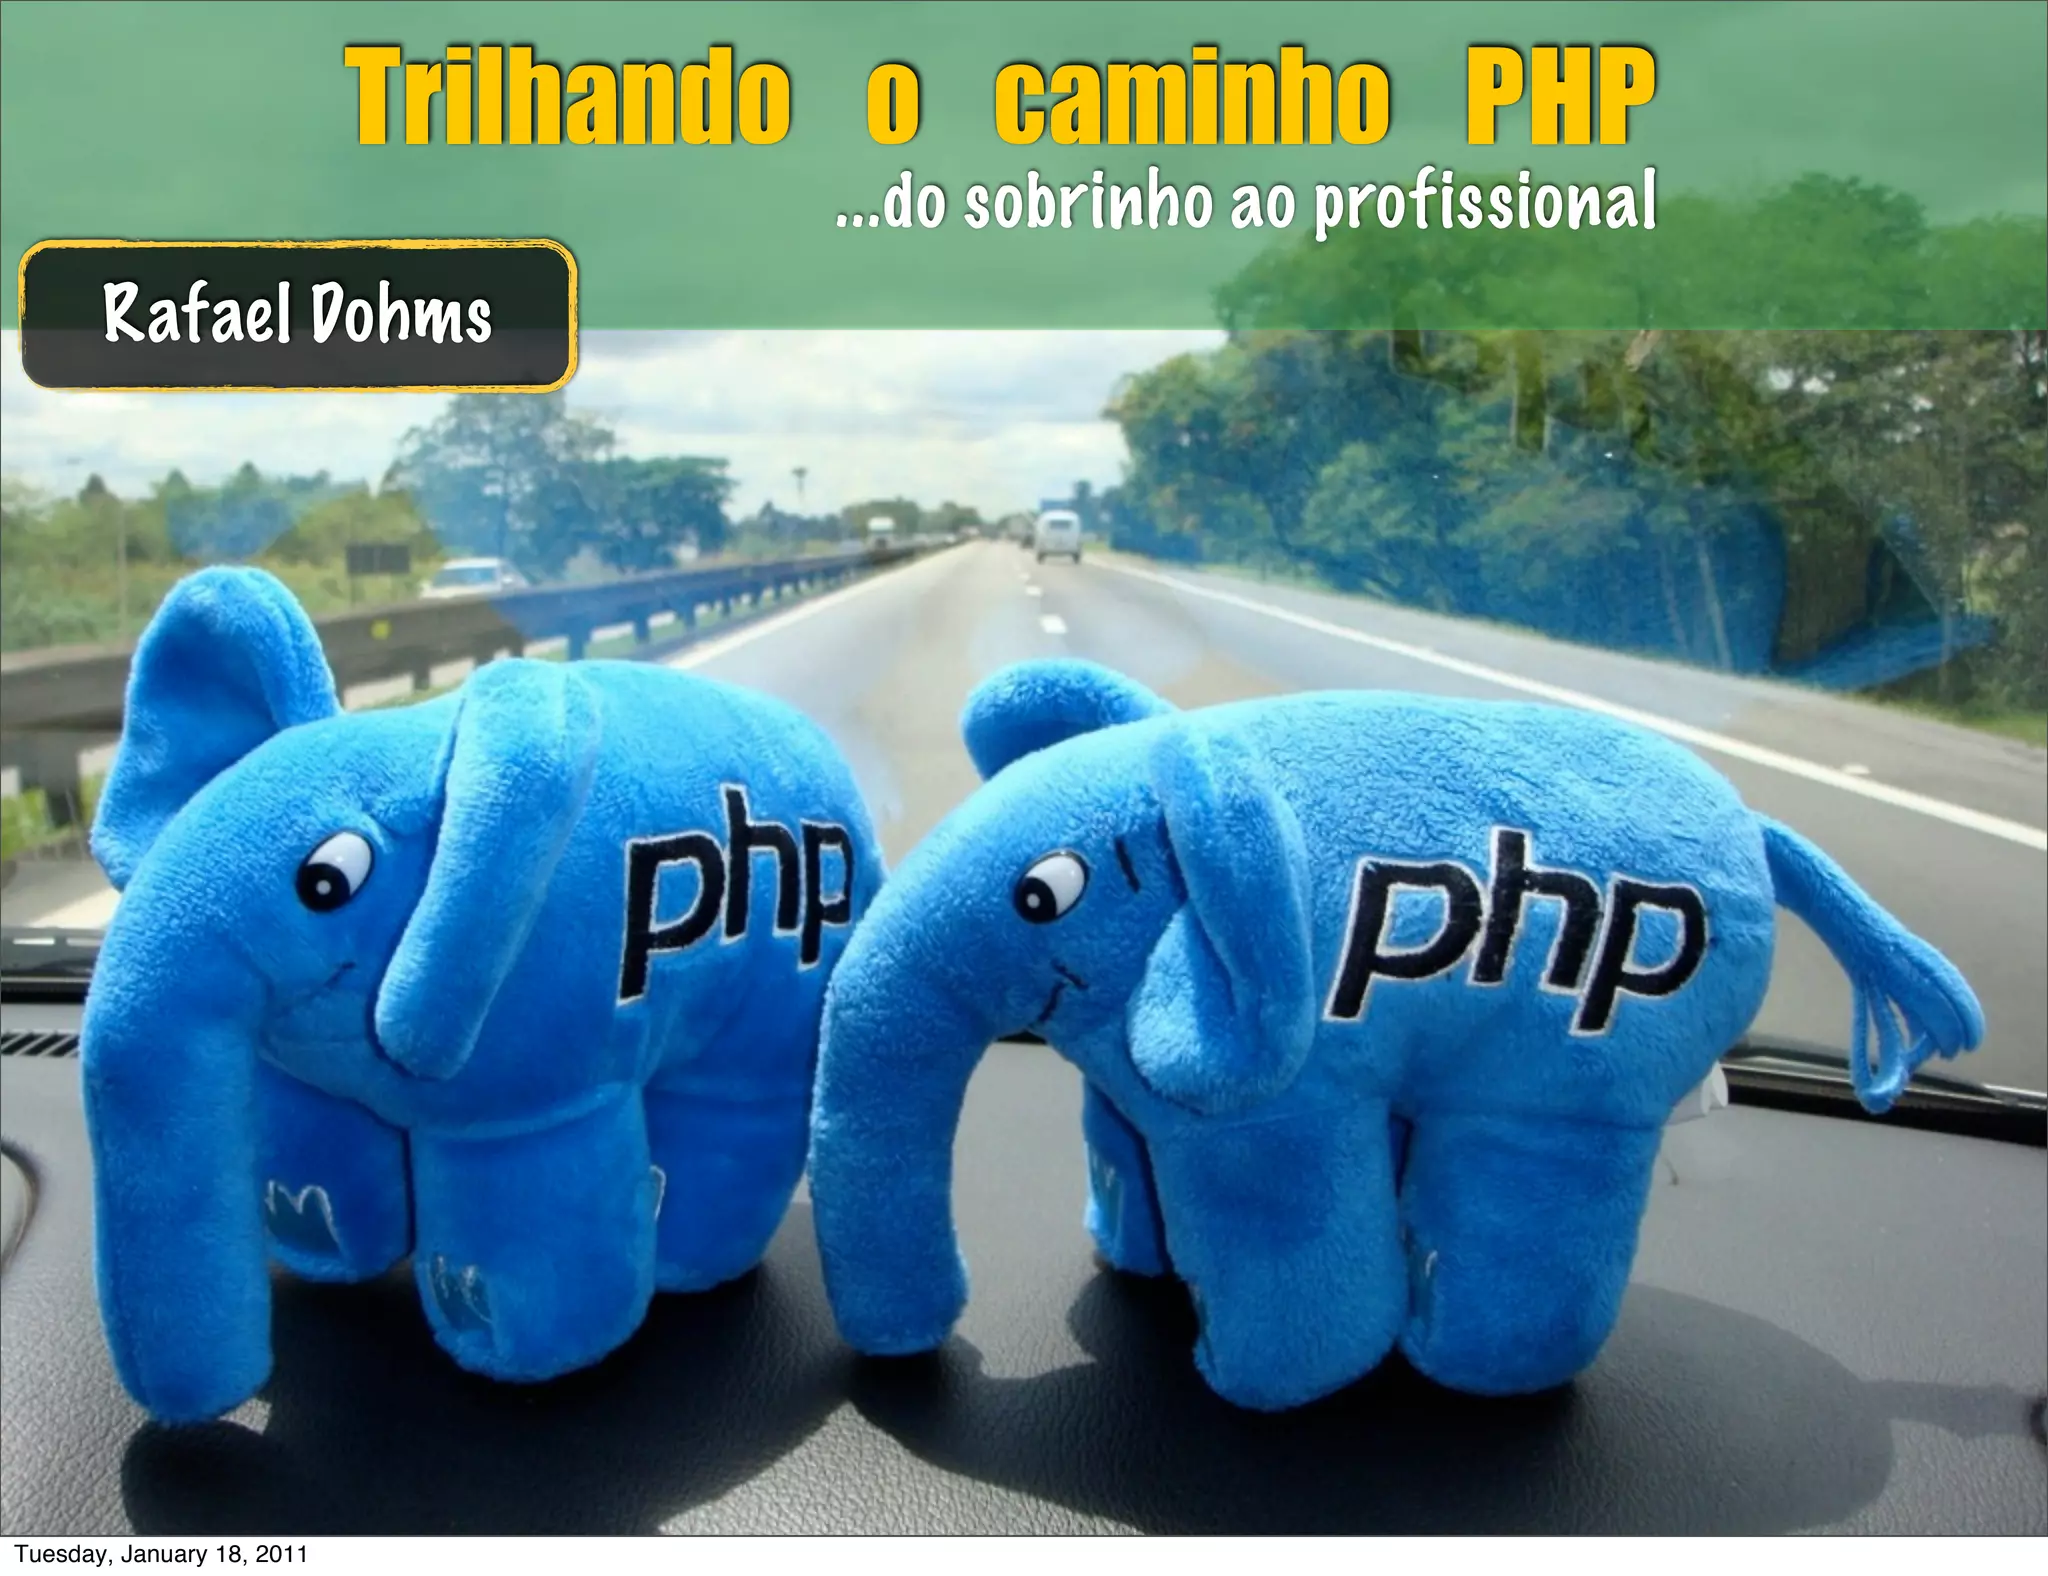 Trilhando o Caminho PHP 2.0